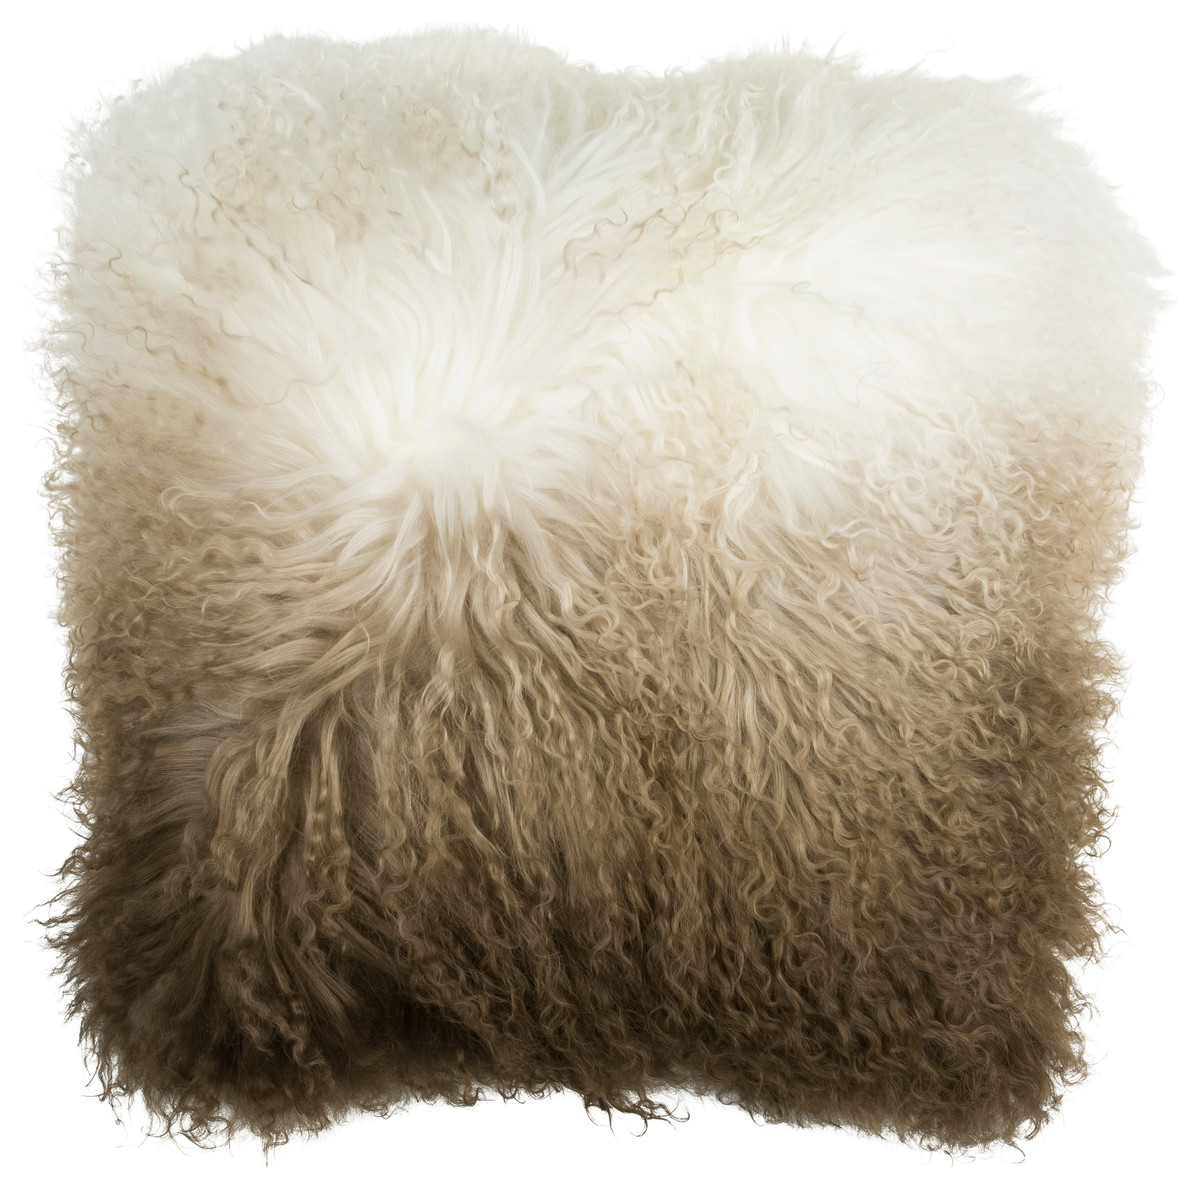 Fuyu Dipdyed Throw Pillow, 100% Mongolian Sheep Fur, Brown/White, 16"x 16"